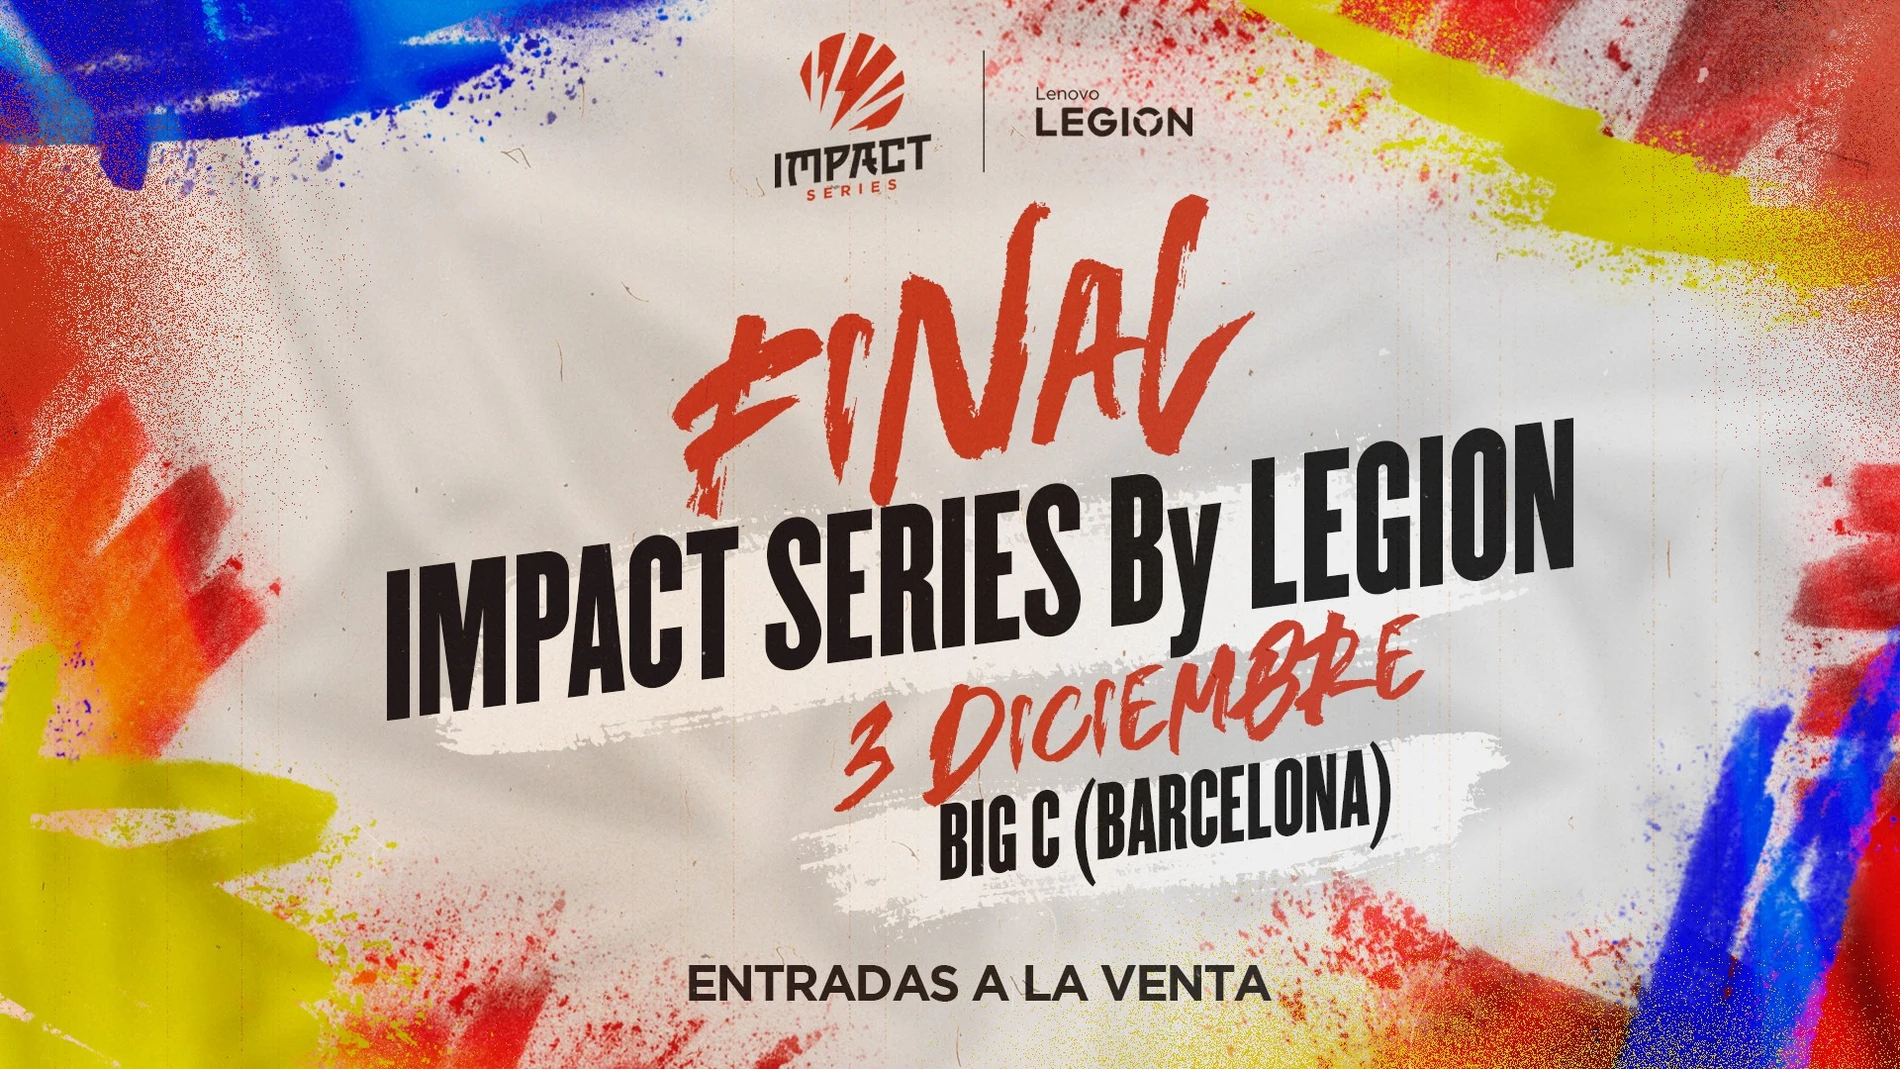 La competición organizada por la LVP tendrá lugar en el Big C de Barcelona 